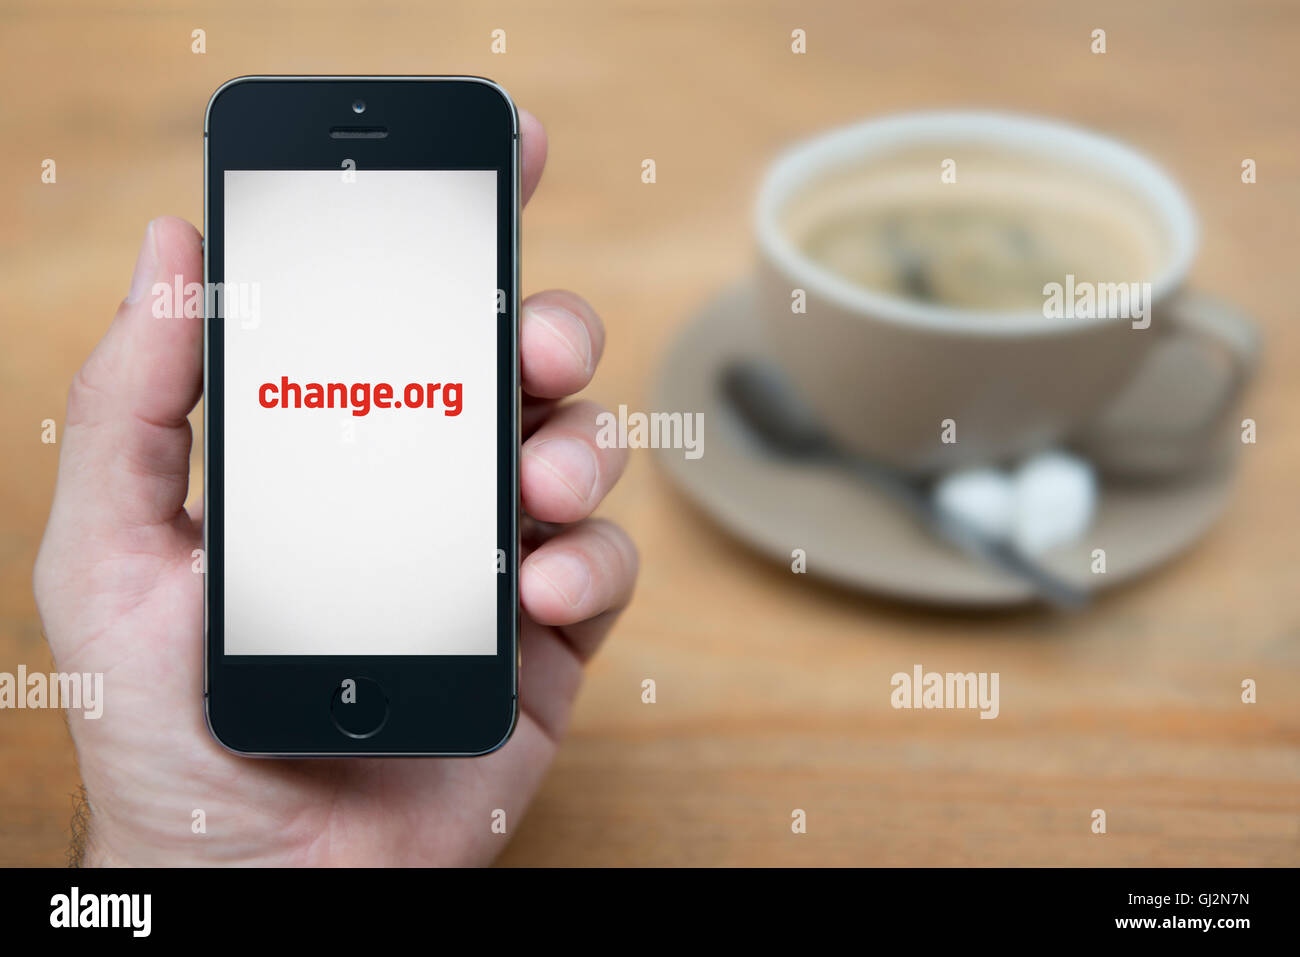 Un hombre mira el iPhone que muestra el logotipo de Change.org, mientras se sentó con una taza de café (uso Editorial solamente). Foto de stock